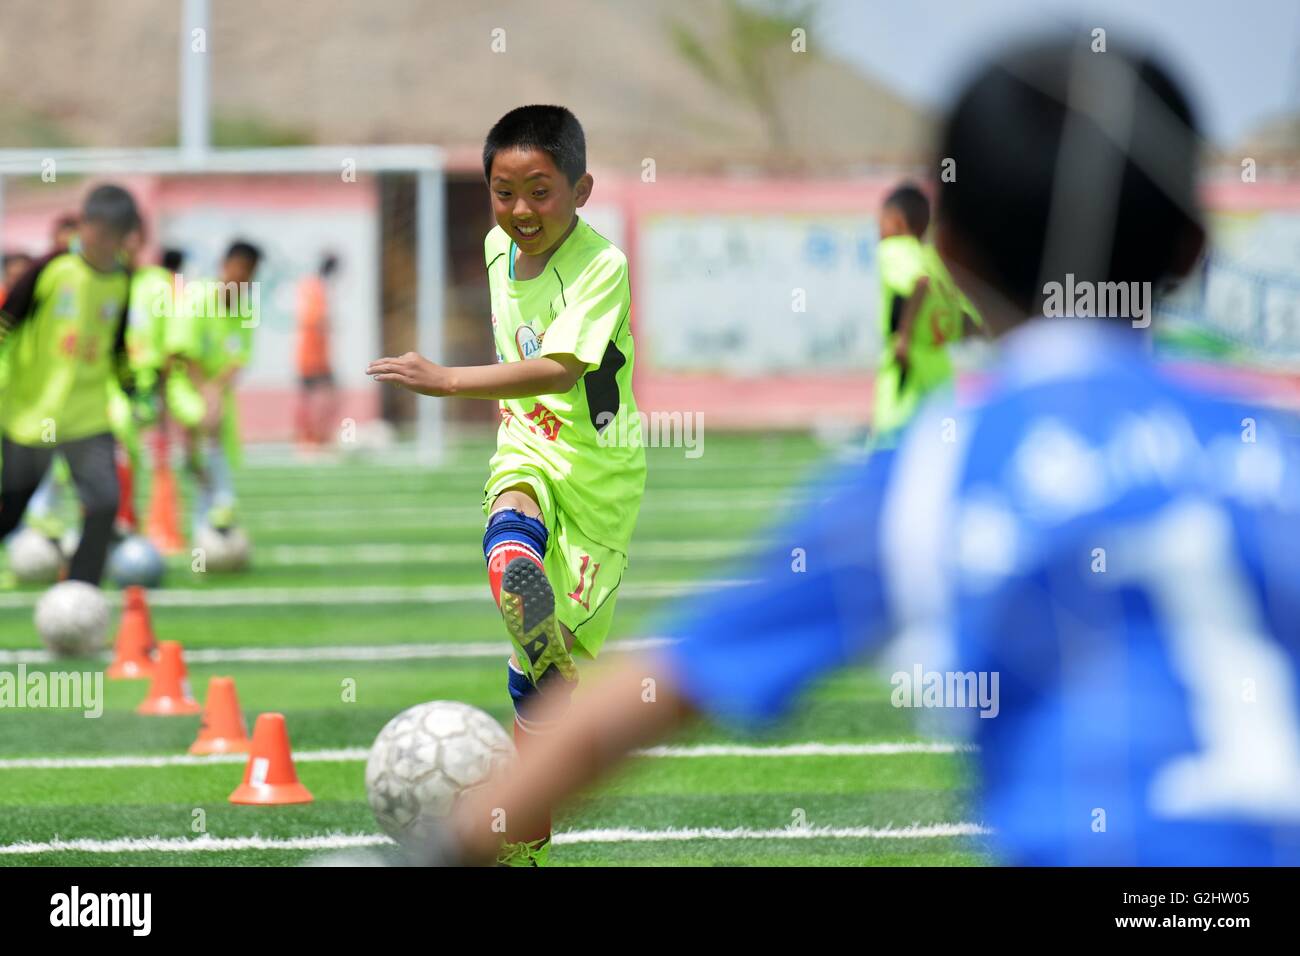 (160601)--LANZHOU, 1. Juni 2016 (Xinhua)--Li Rongli, ein Mitglied der Schulmannschaft spielt Fußball in einem Bohrer in der Zhonglianchuan Primary School Fußball spielen nach der Schule in Yuzhong Grafschaft, Nordwesten Chinas Provinz Gansu, 31. Mai 2016. Fußball bereichert Kinder Alltag an der Schule in den Bereichen ländliche Plateau auf einer Höhe von mehr als 2.300 Metern befindet. Viele Kinder haben die Möglichkeit zur Teilnahme an Fußball-Spiele in den großen Städten. Schulleiter Ma Anwu zu hoffen, dass Fußball mehr ländlichen Studenten Schritt aus den Bergen helfen könnte. Mittwoch ist Internationaler Kindertag. Kind Stockfoto